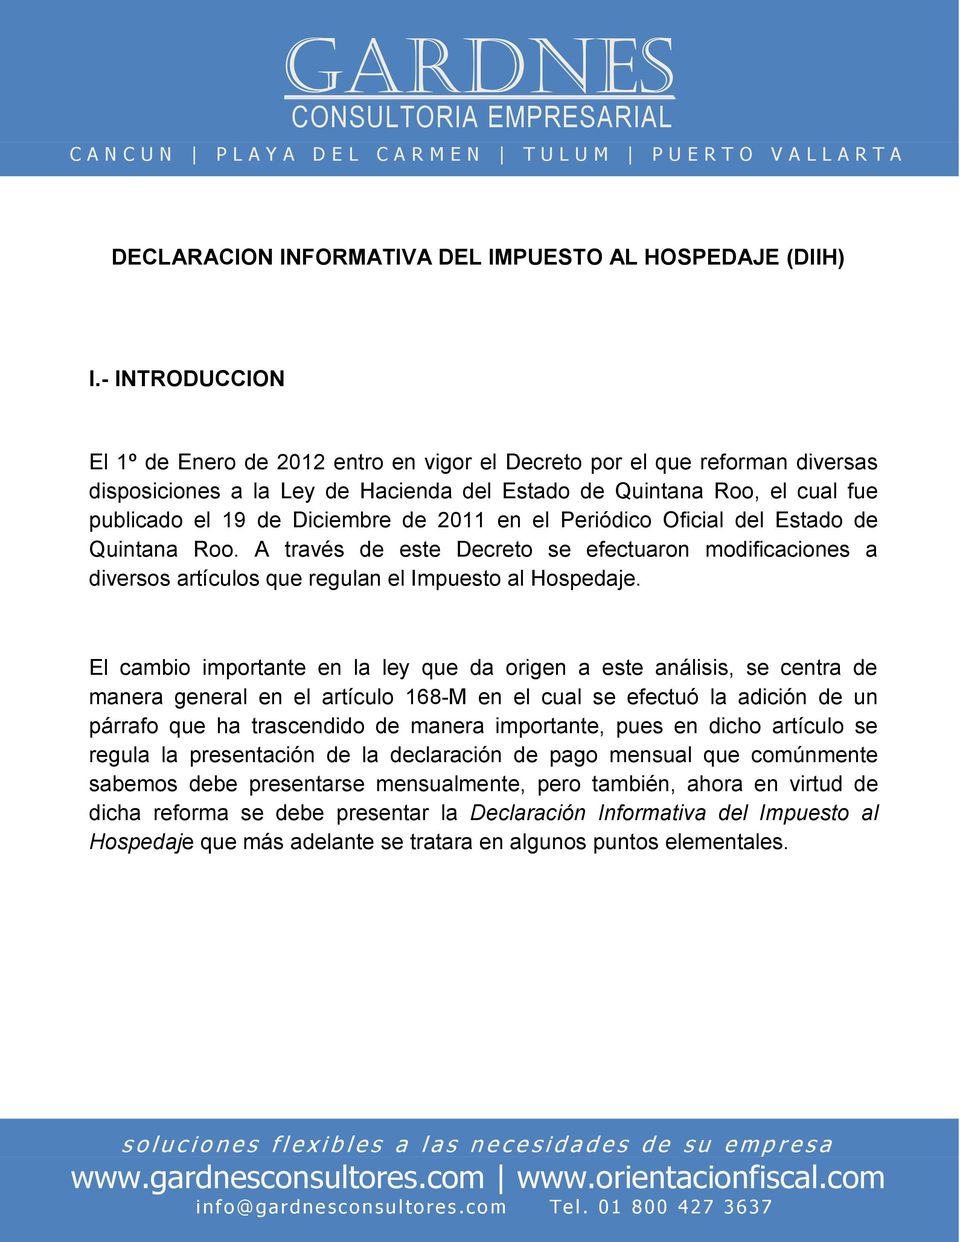 2011 en el Periódico Oficial del Estado de Quintana Roo. A través de este Decreto se efectuaron modificaciones a diversos artículos que regulan el Impuesto al Hospedaje.